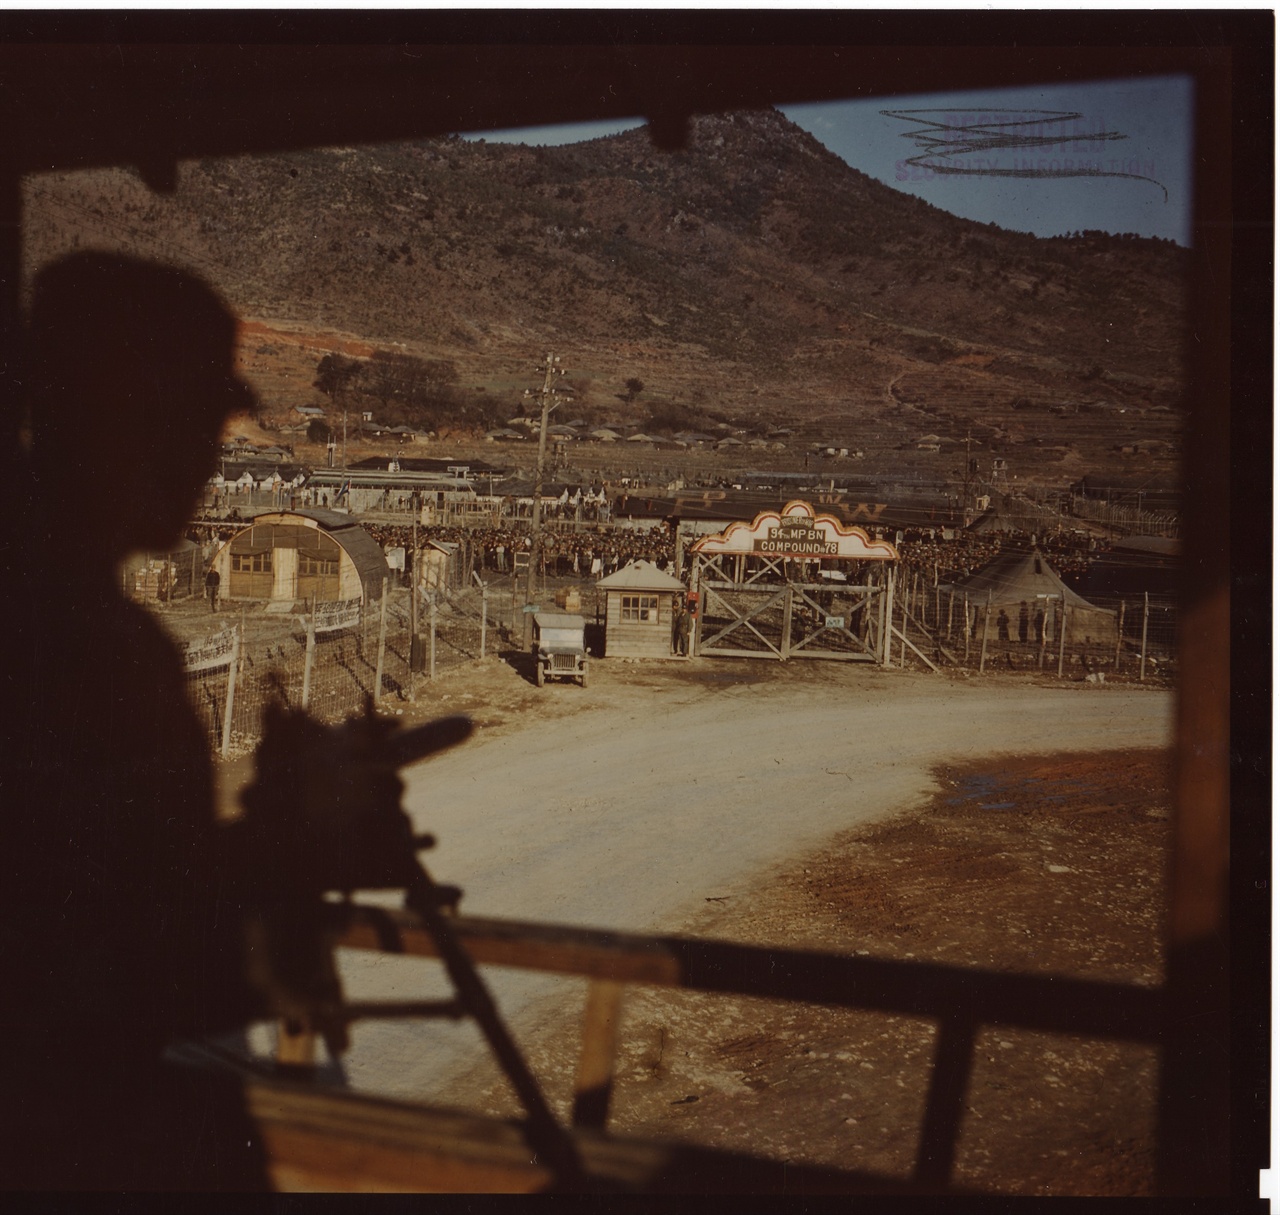  1952. 3. 20. 거제포로수용소. 한 포로감시병이 포로감시초소 기관총 앞에서 중국군 포로수용소를 경계하고 있다.